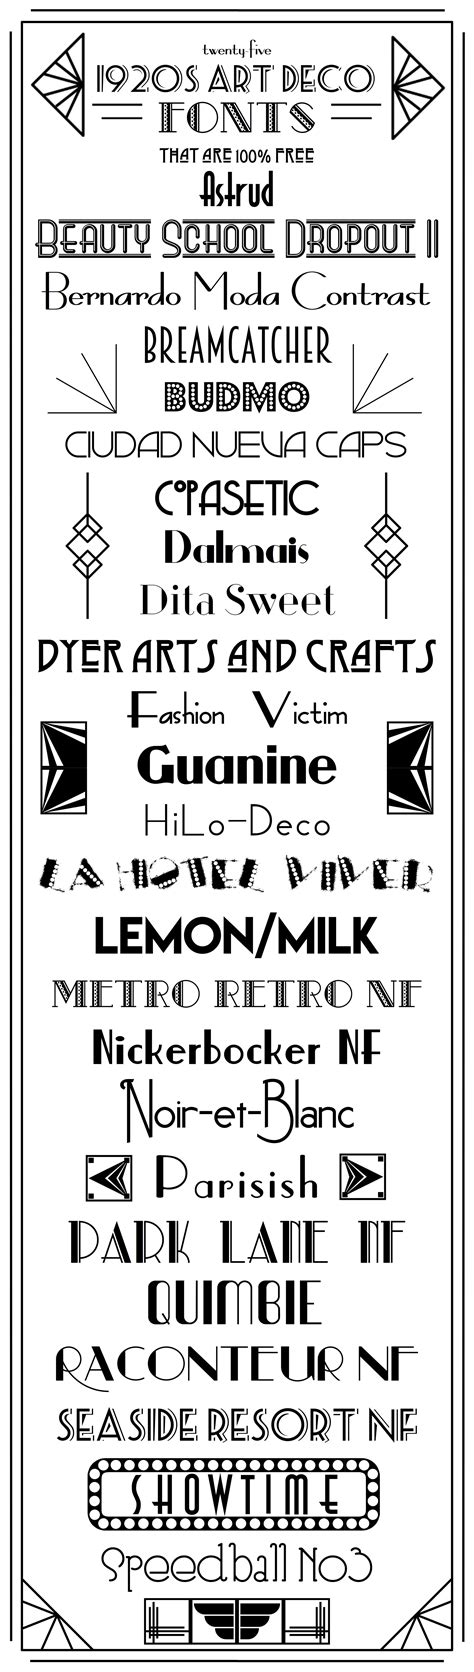 Art Deco 1920s Font Download Free Mock Up Vrogue